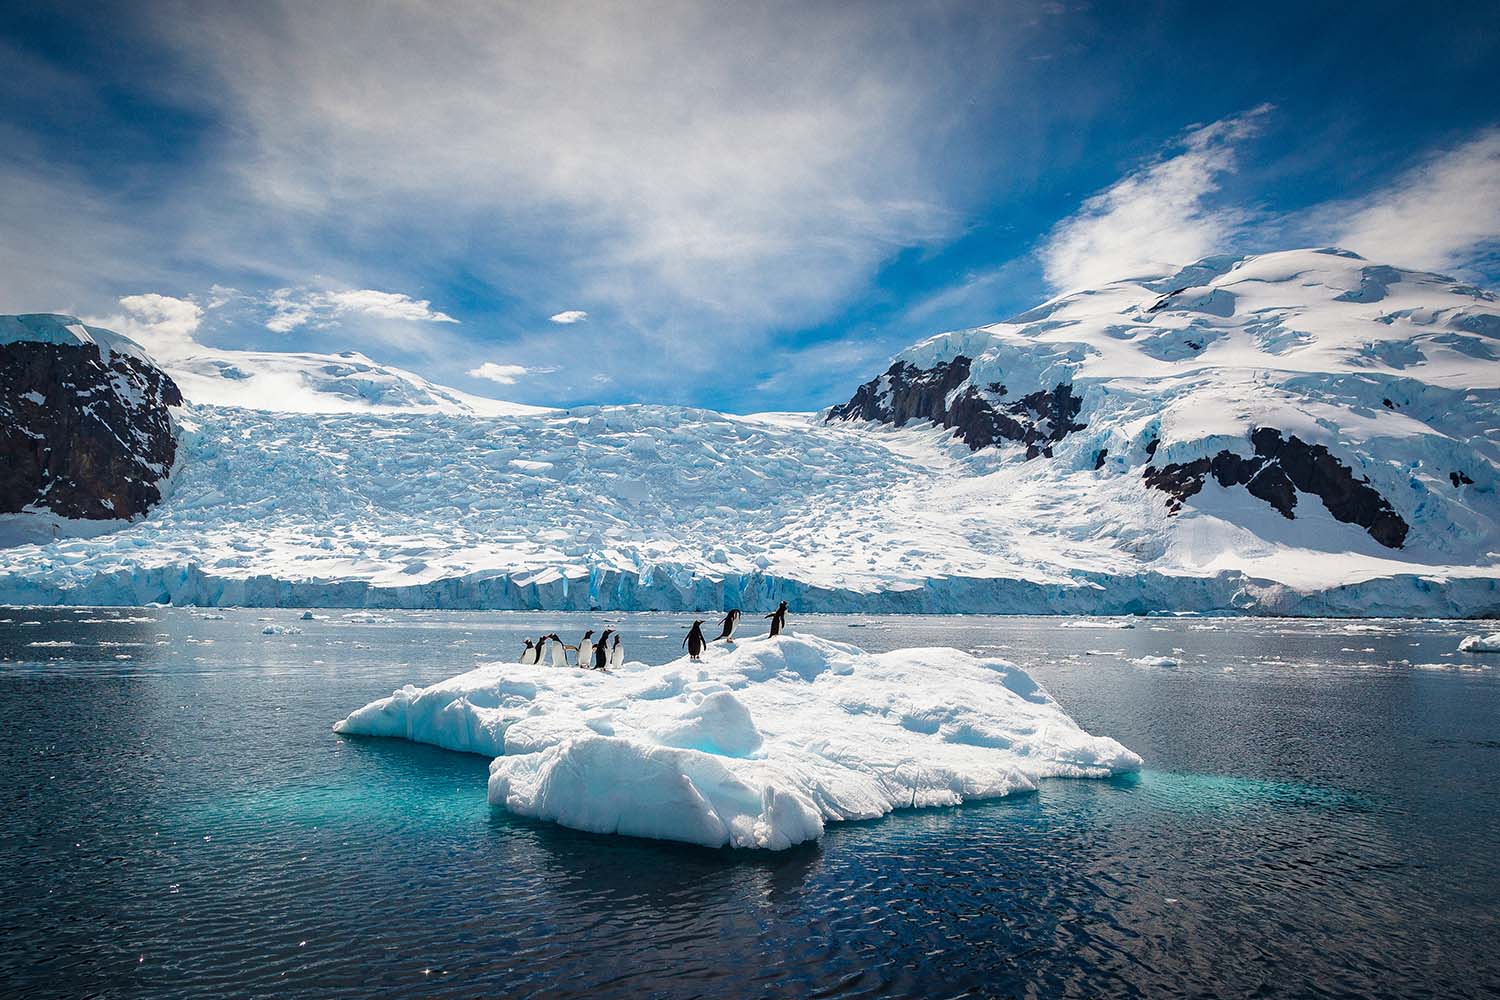 Penguins relaxing on an iceberg